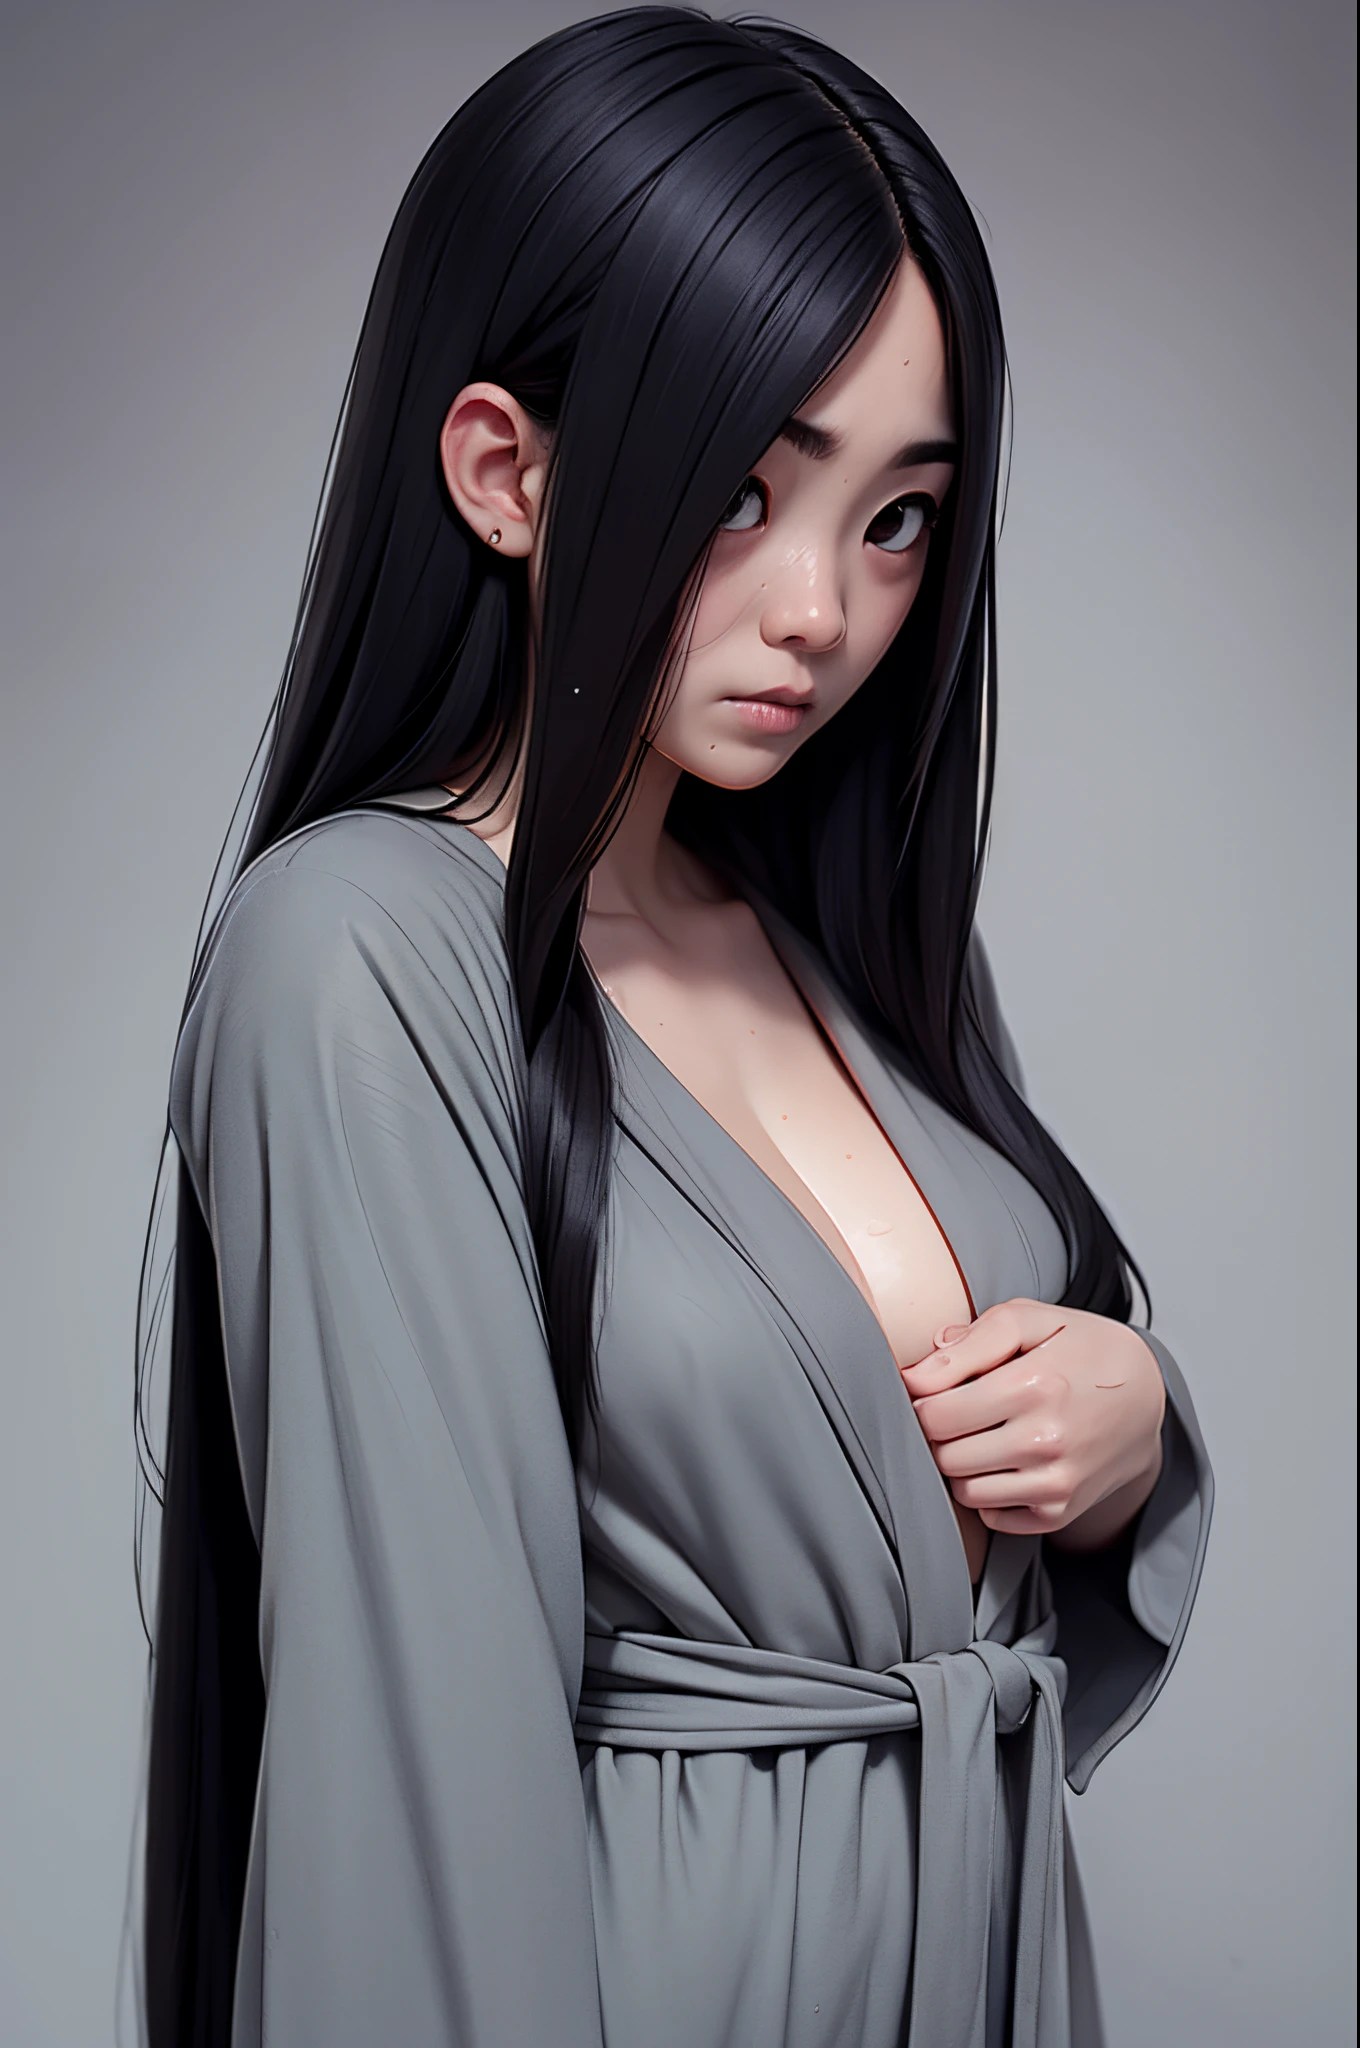 Sadako, encharcado, Roupão molhado, pele de cor cinza, O cabelo cobre o rosto, sexy para.